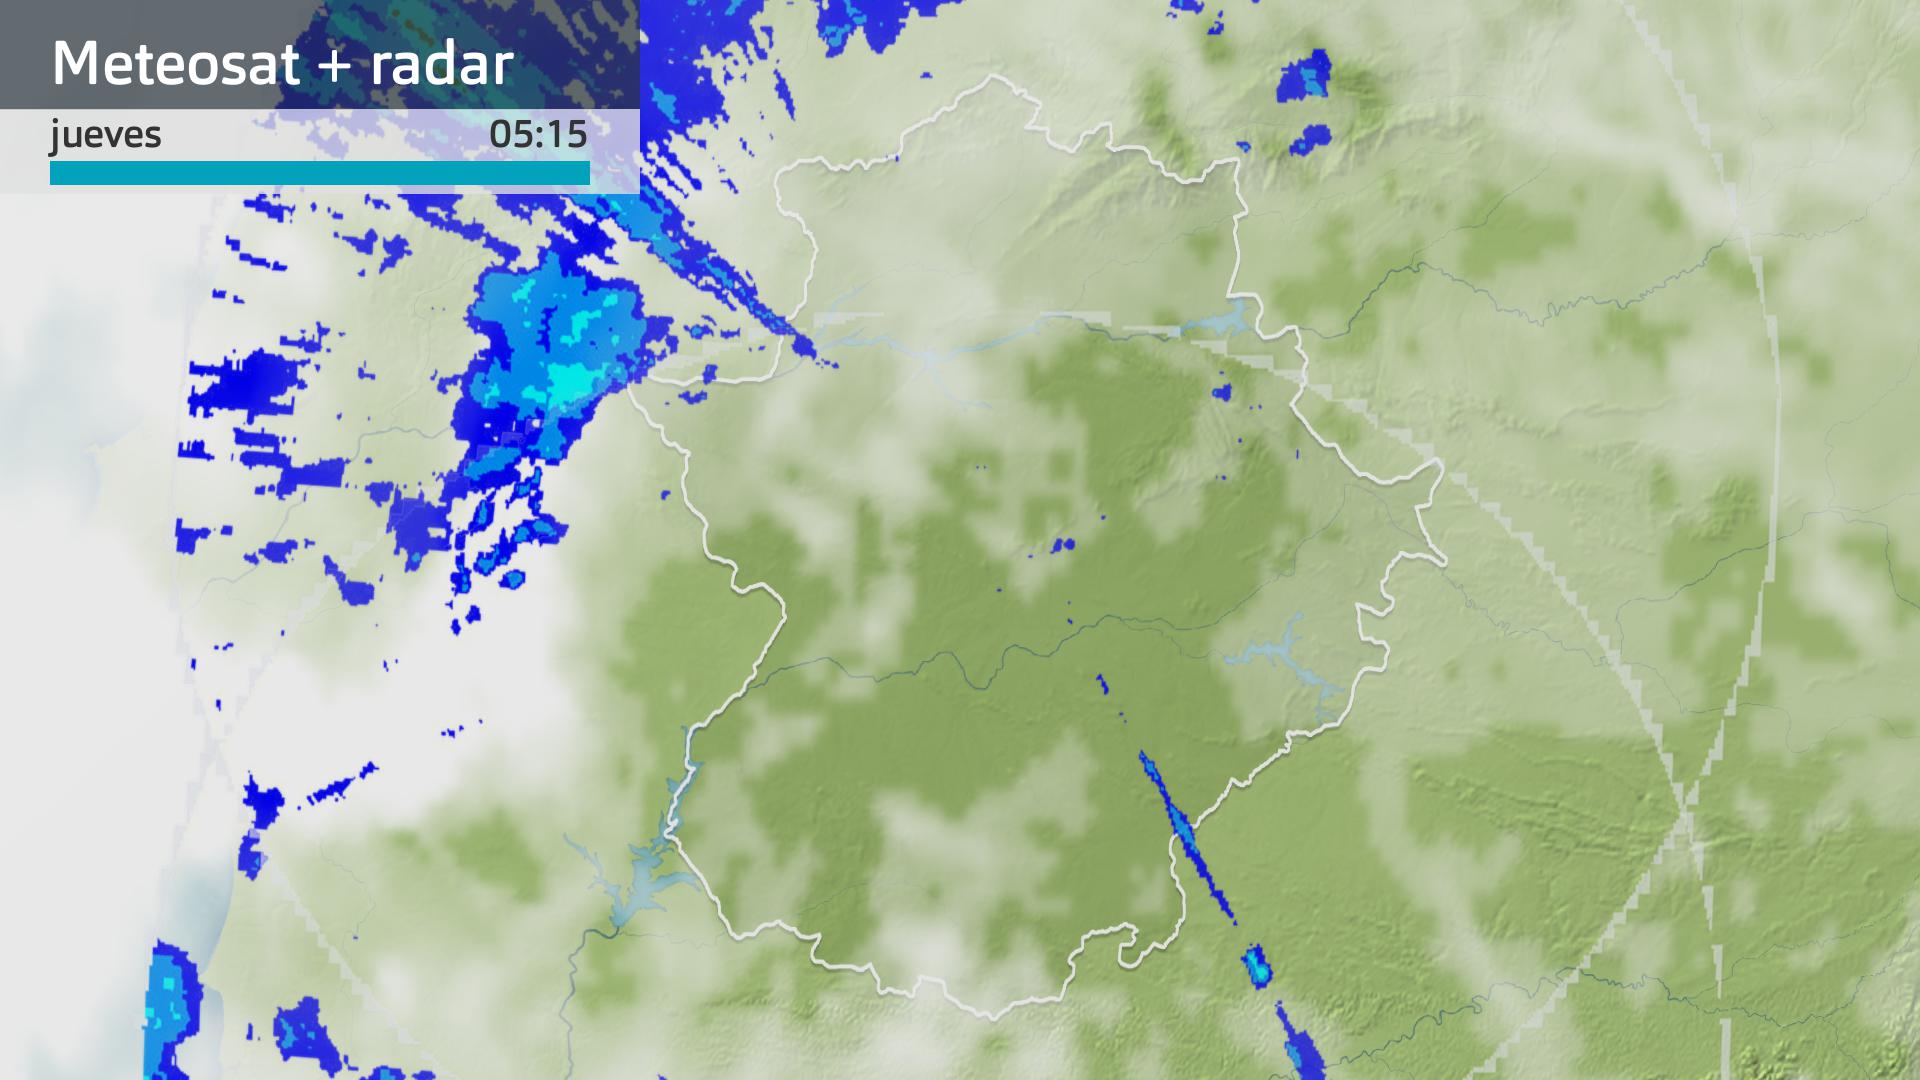 Imagen del Meteosat + radar meteorológico jueves 30 de noviembre 5:15 h.